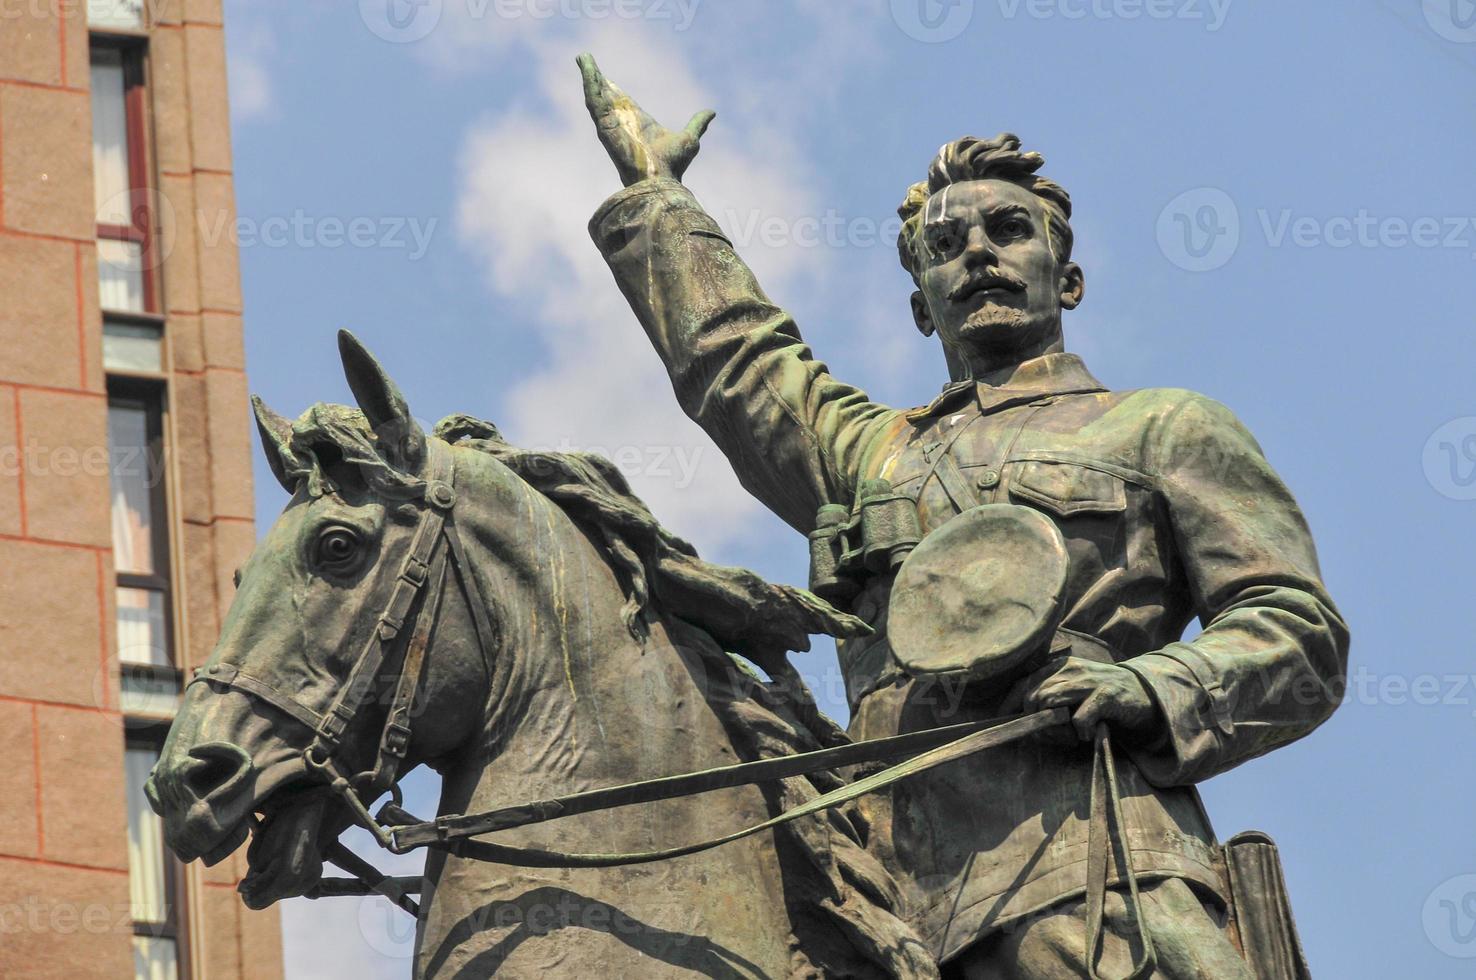 monumento a nikolay shchors em kiev, ucrânia. ele era um comandante do exército vermelho, membro do partido comunista russo, conhecido por sua coragem pessoal durante a guerra civil russa. foto